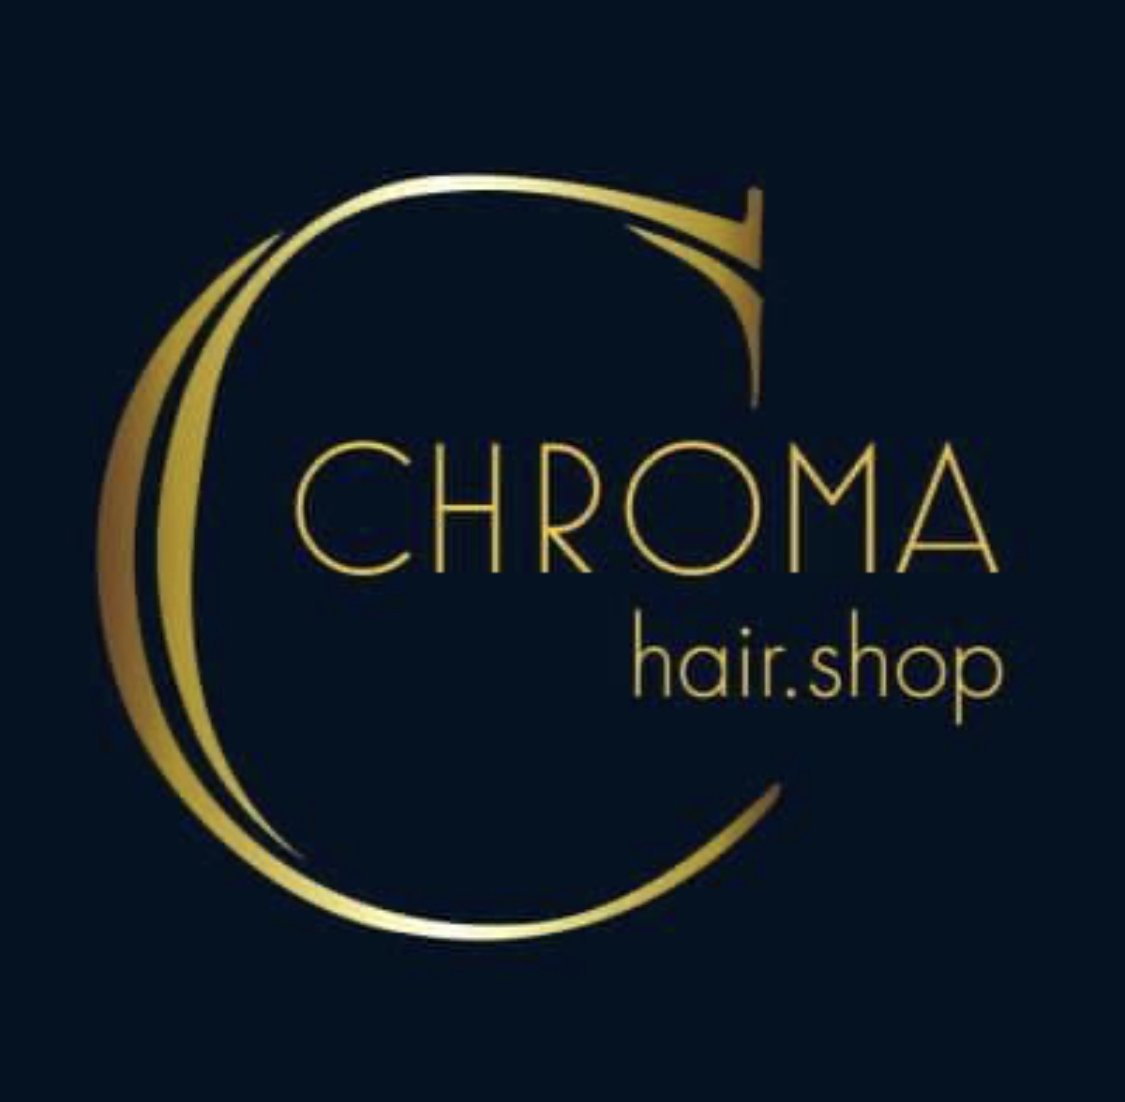 CHROMA HAIR.SHOP